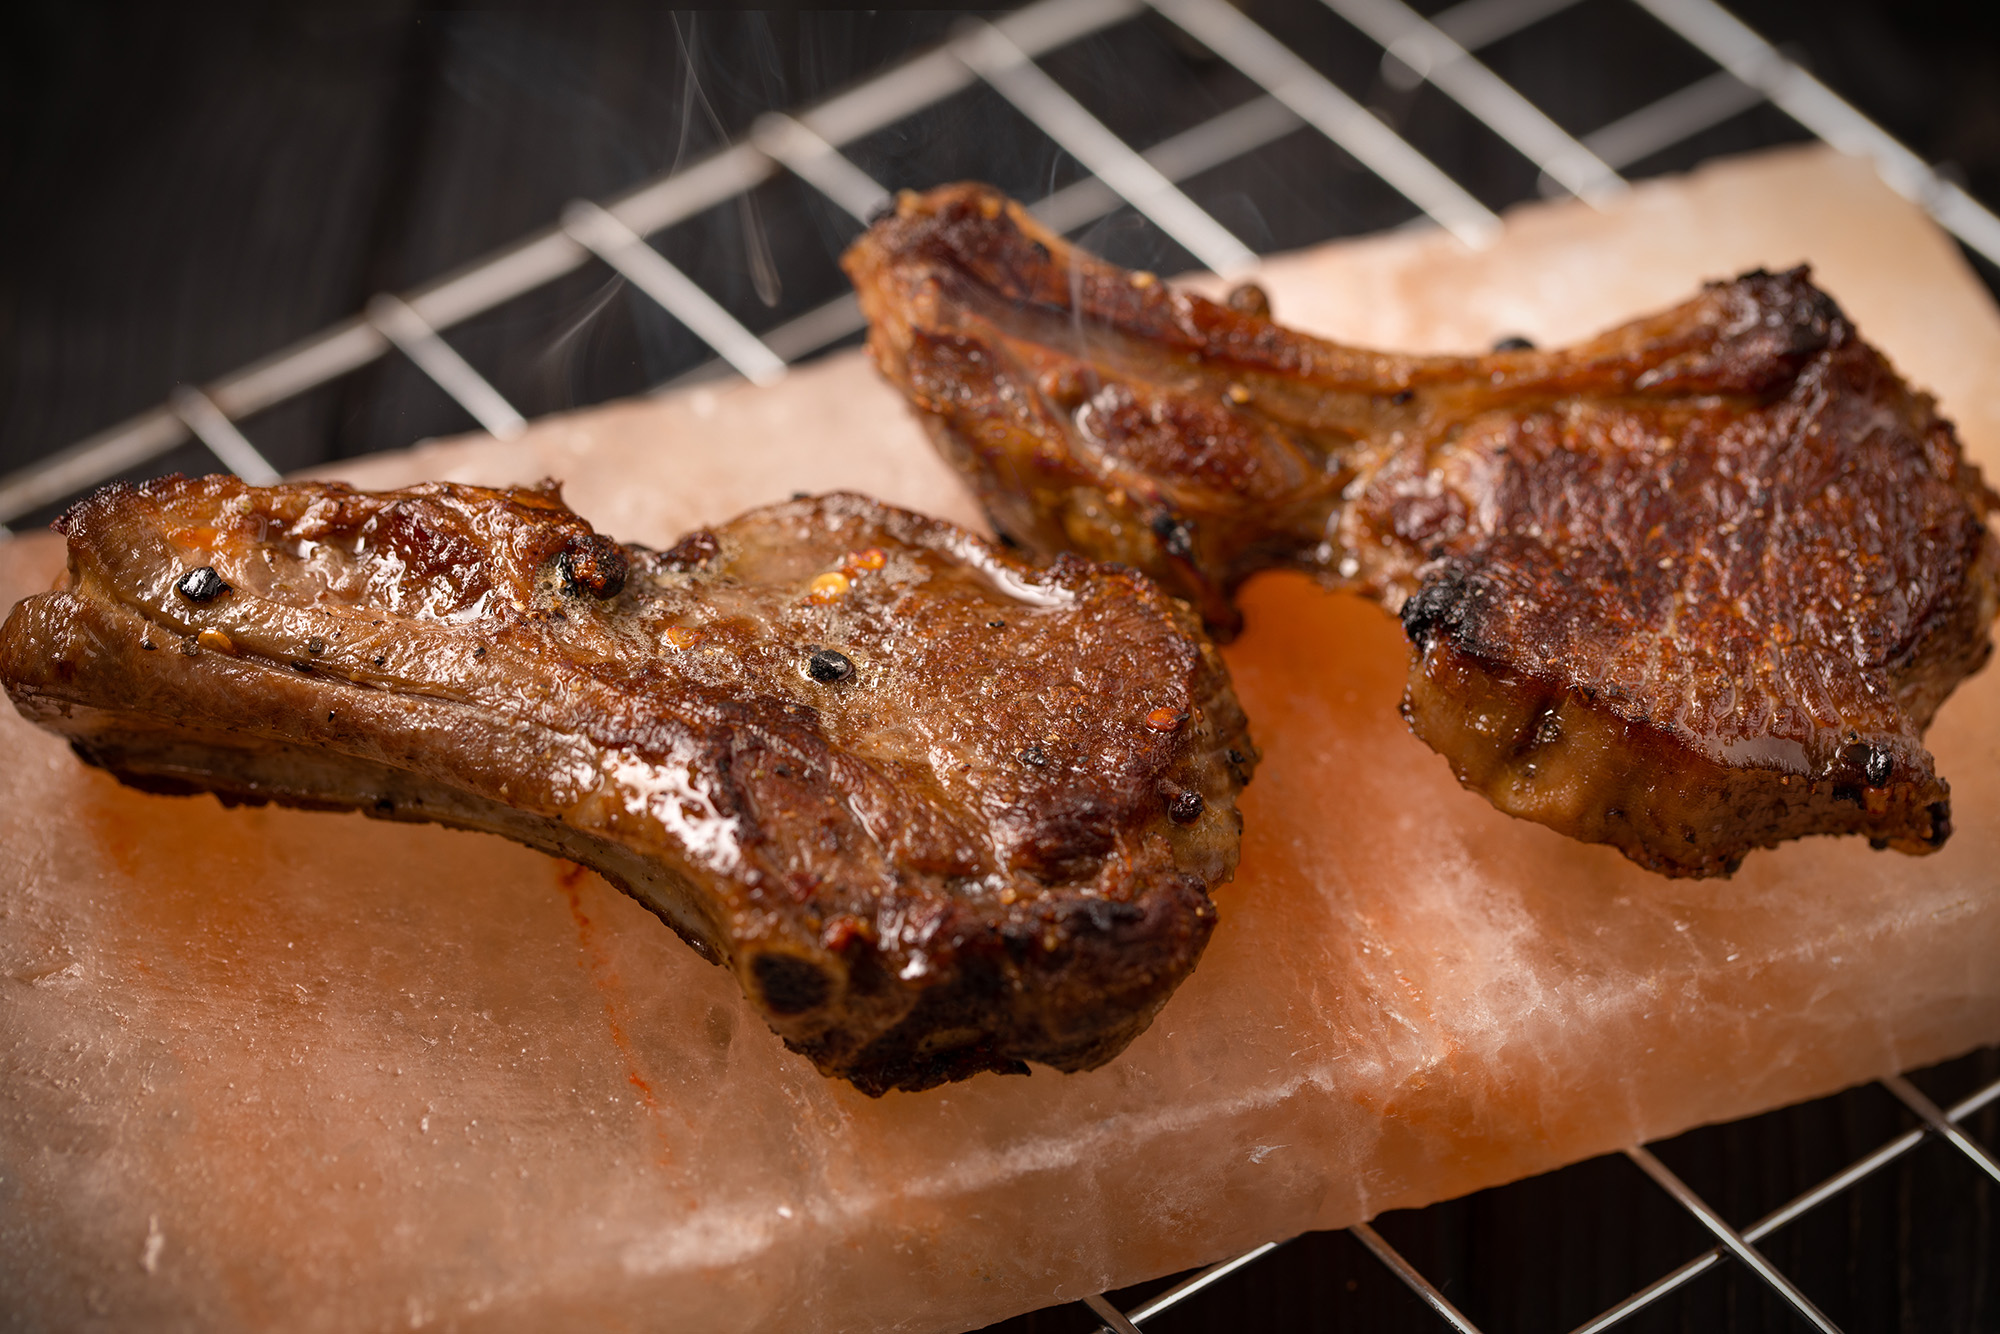 Так жарят мясо на солевой плитке. Источник: Keeber / Shutterstock